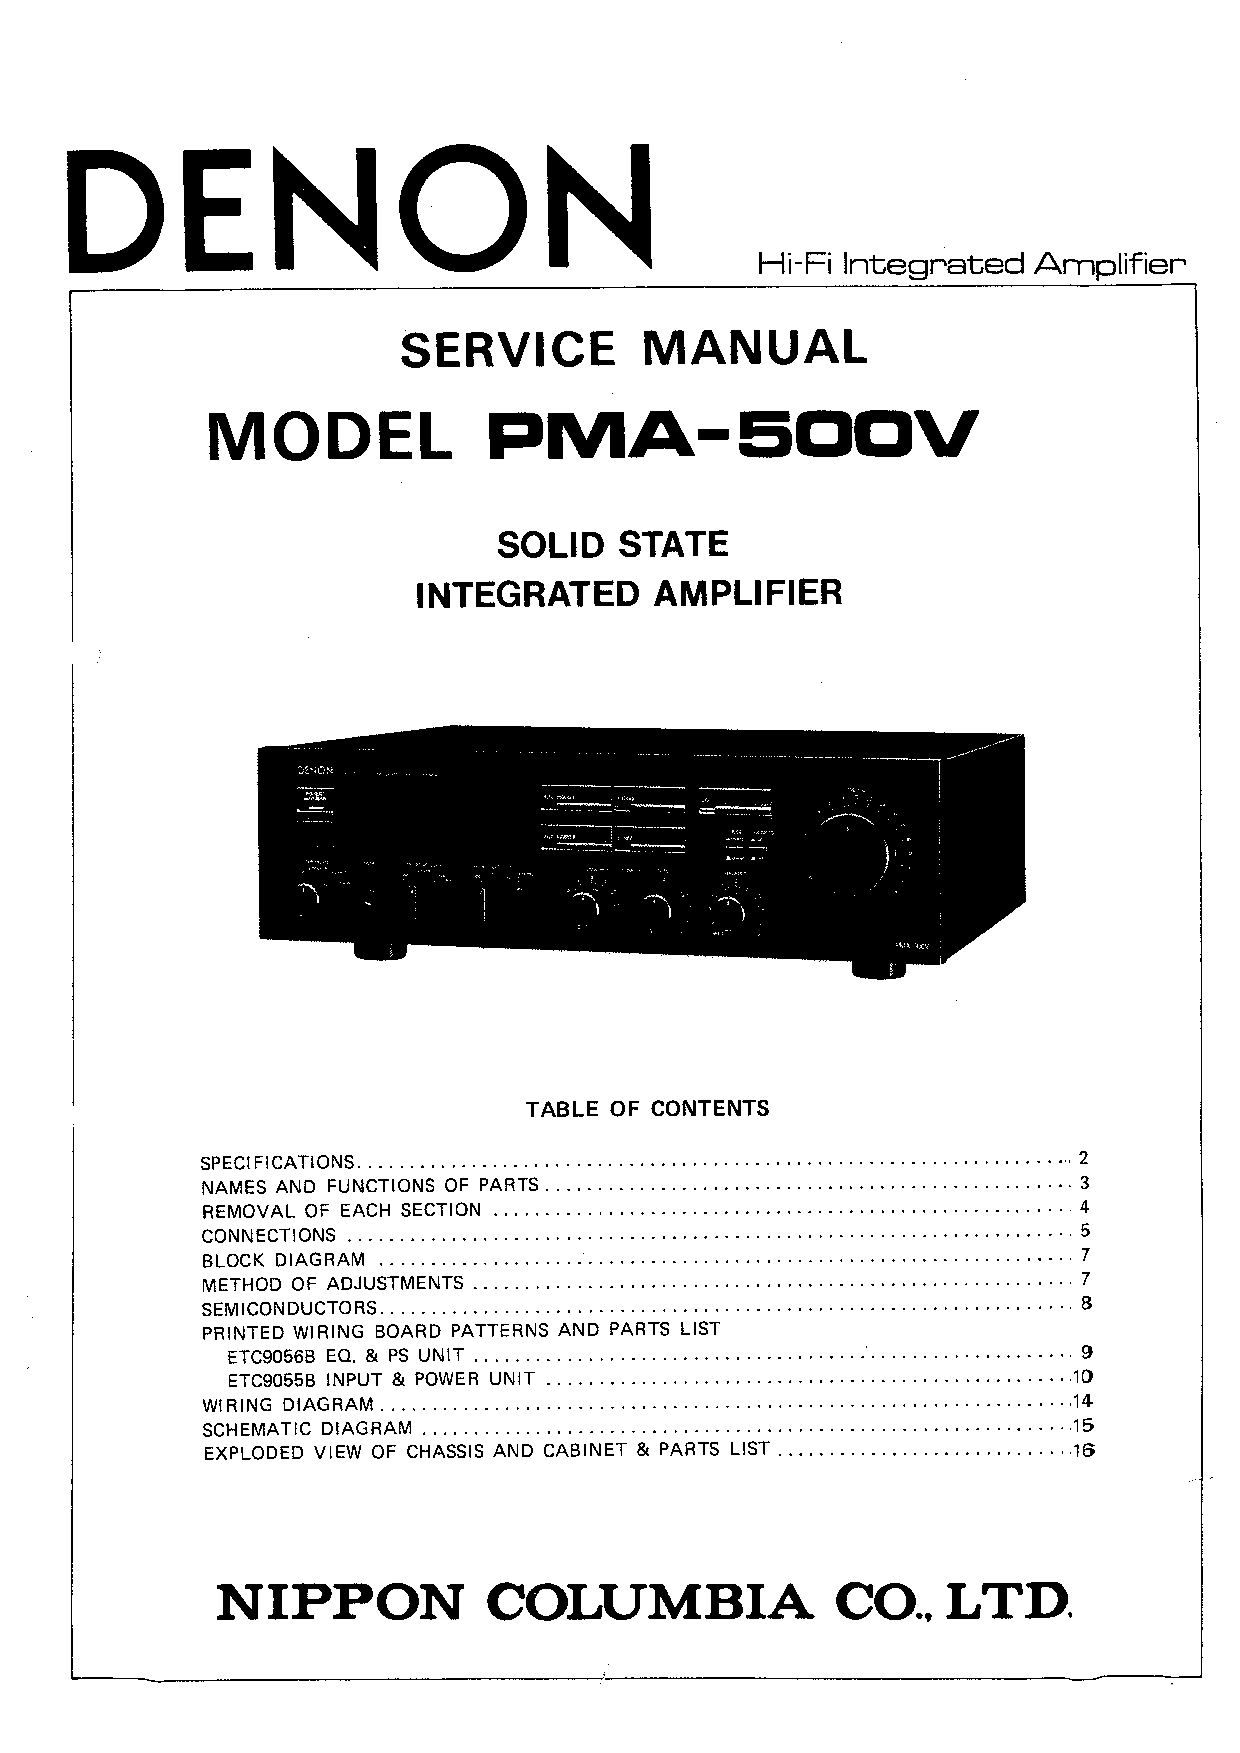 Denon PMA-500V Service Manual